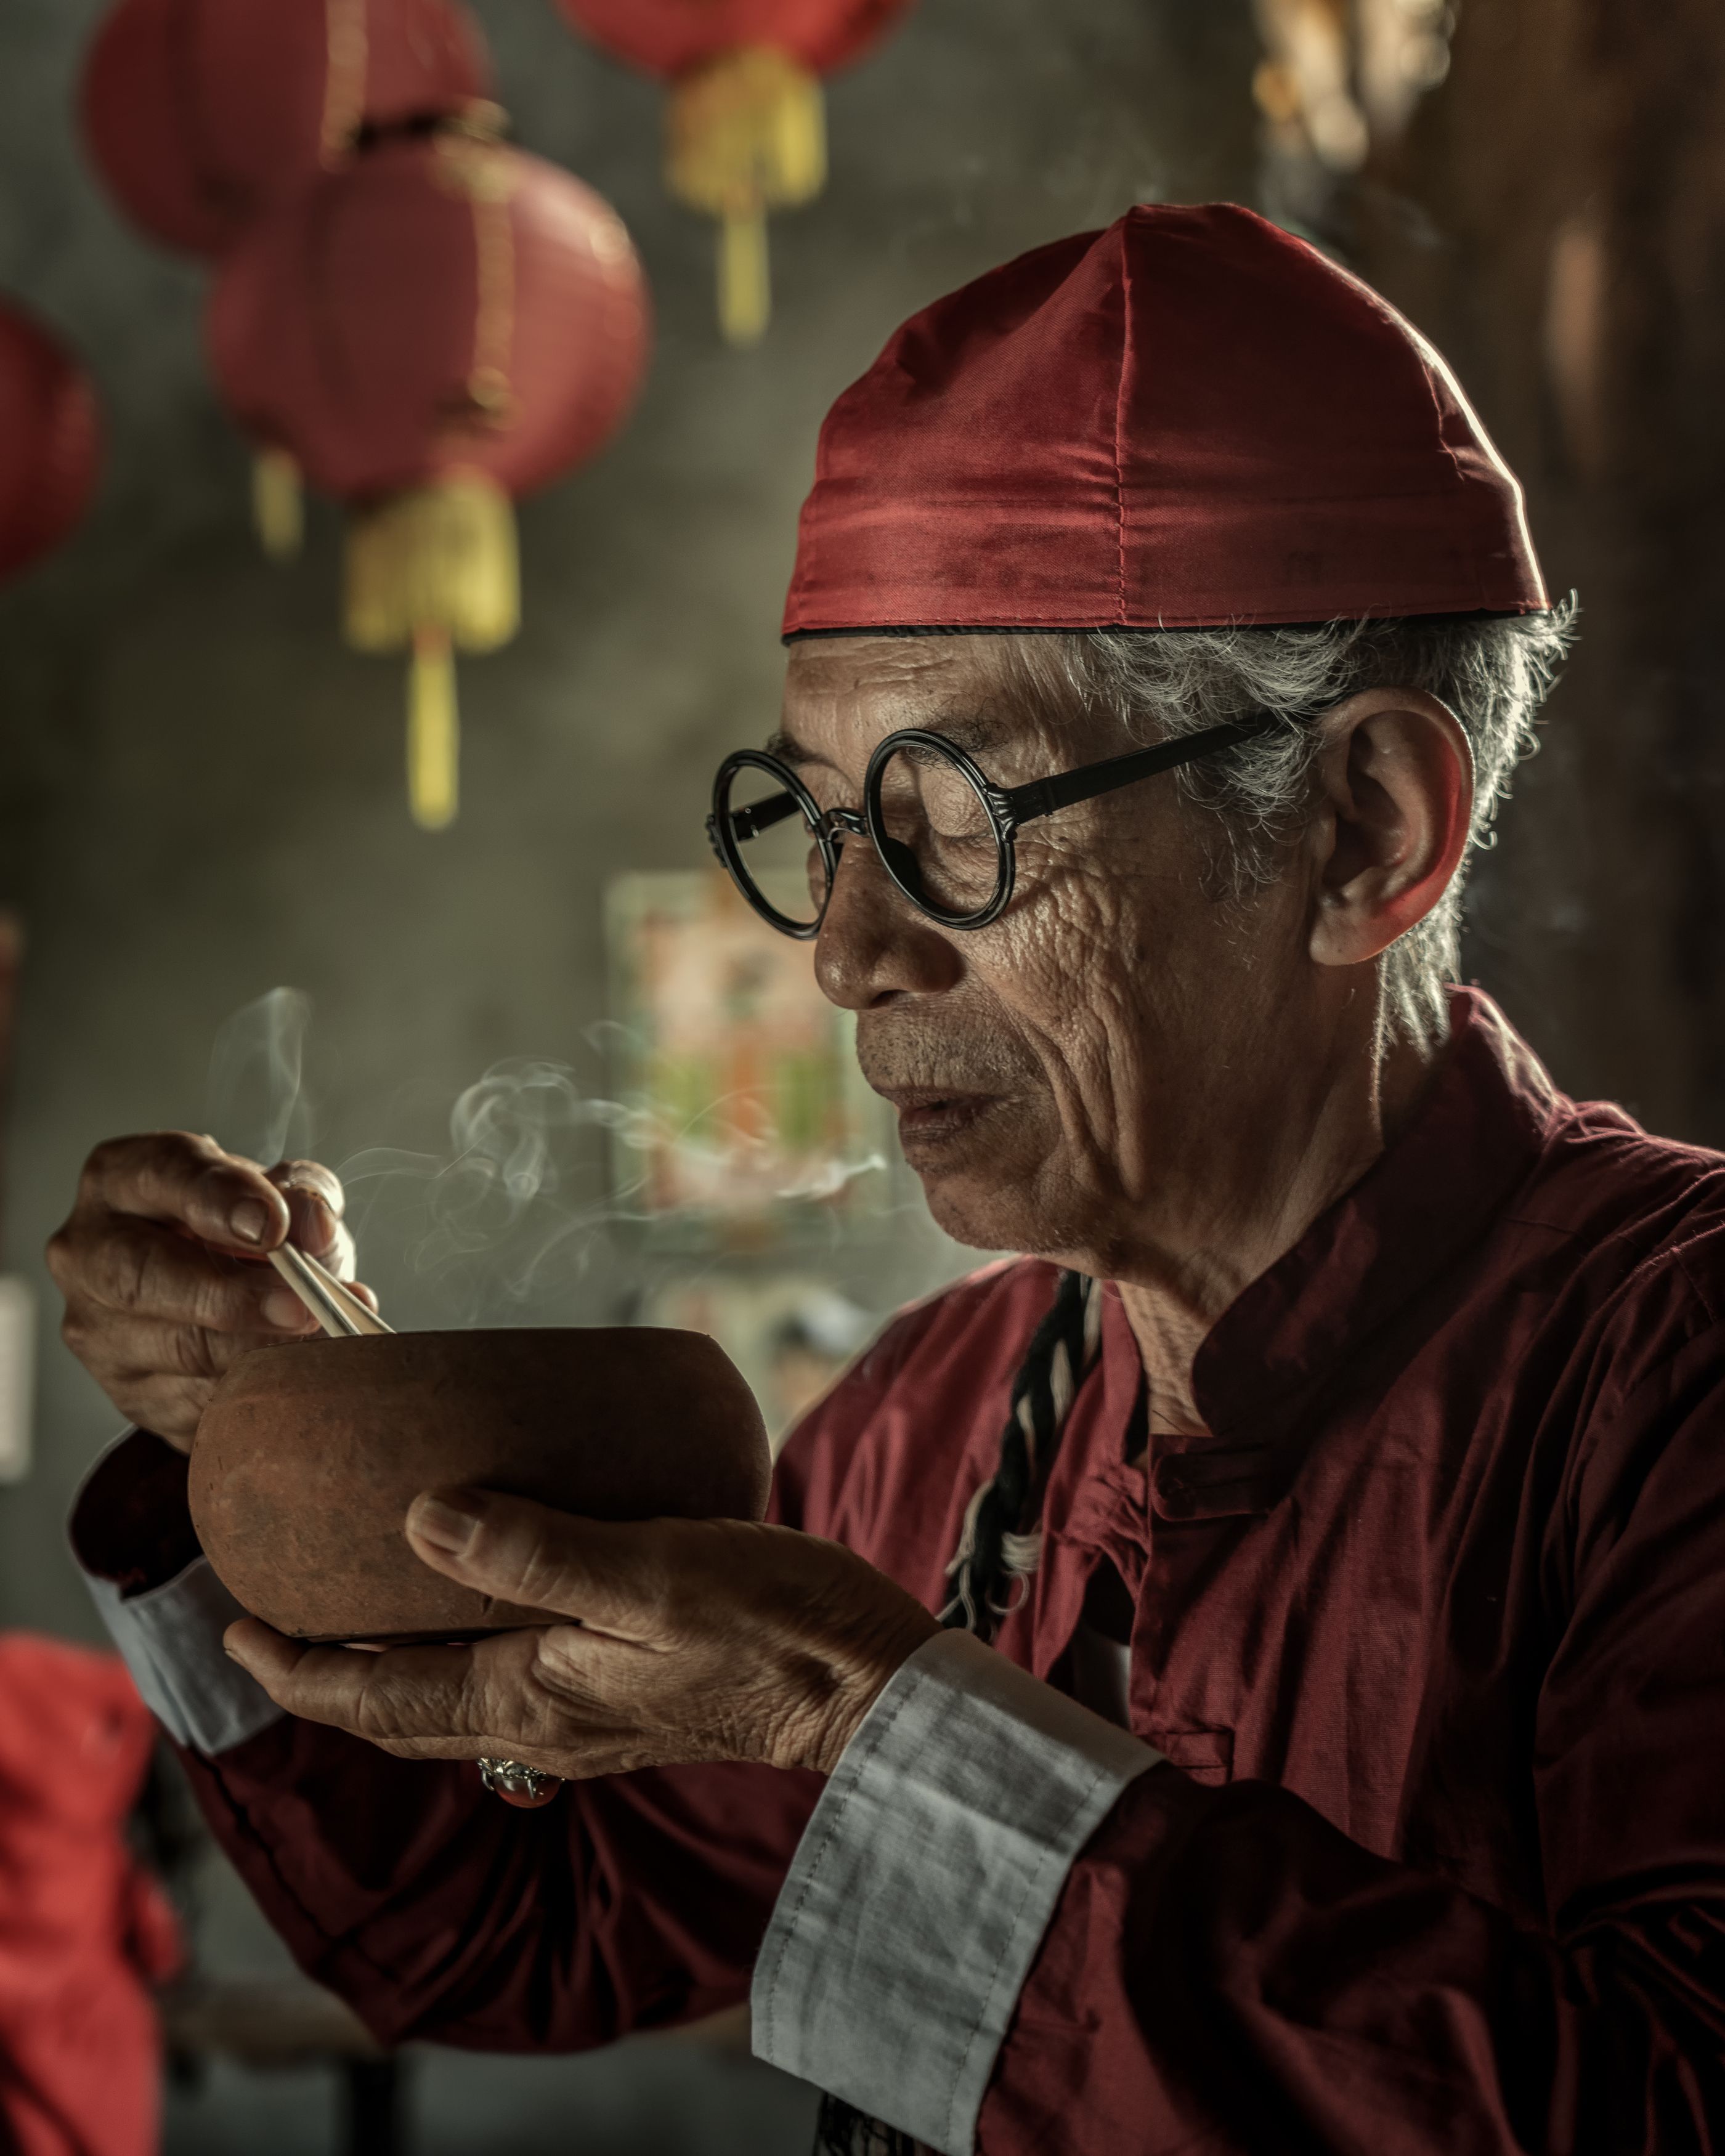 #maleportrait, #conceptualphotography, #chinese, #oldman, Fira Kwan